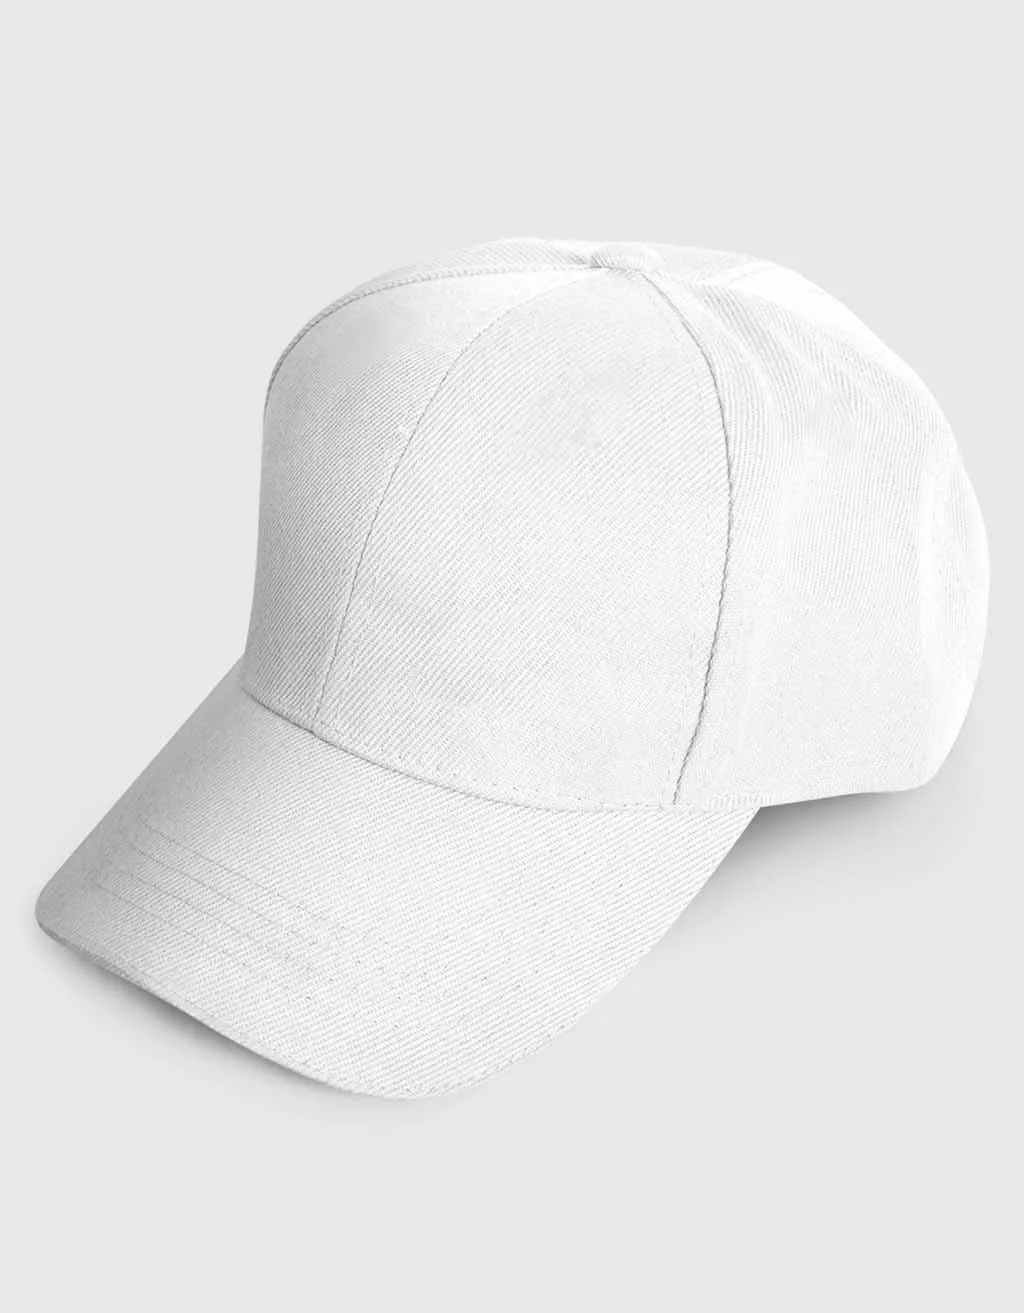 Buy plain white cap for men buy online india under 200